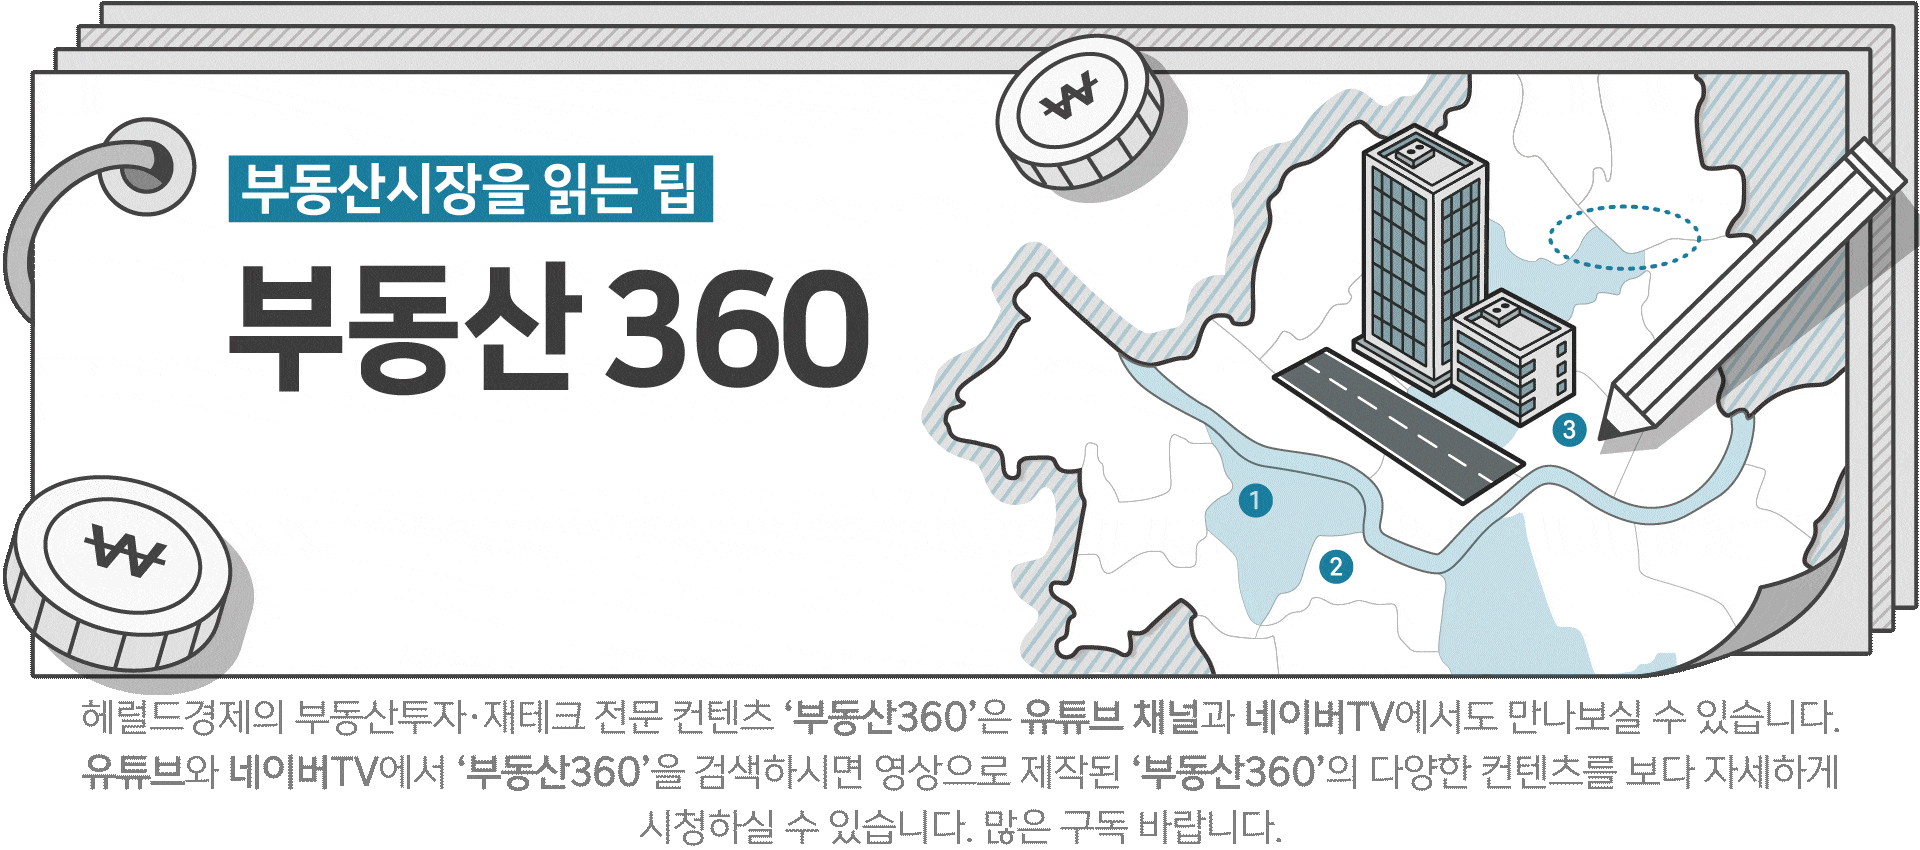 ‘노른자 서울, 흰자 경기도 이제 끝‘ 수도권 30분에 출퇴근한다 [부동산360]